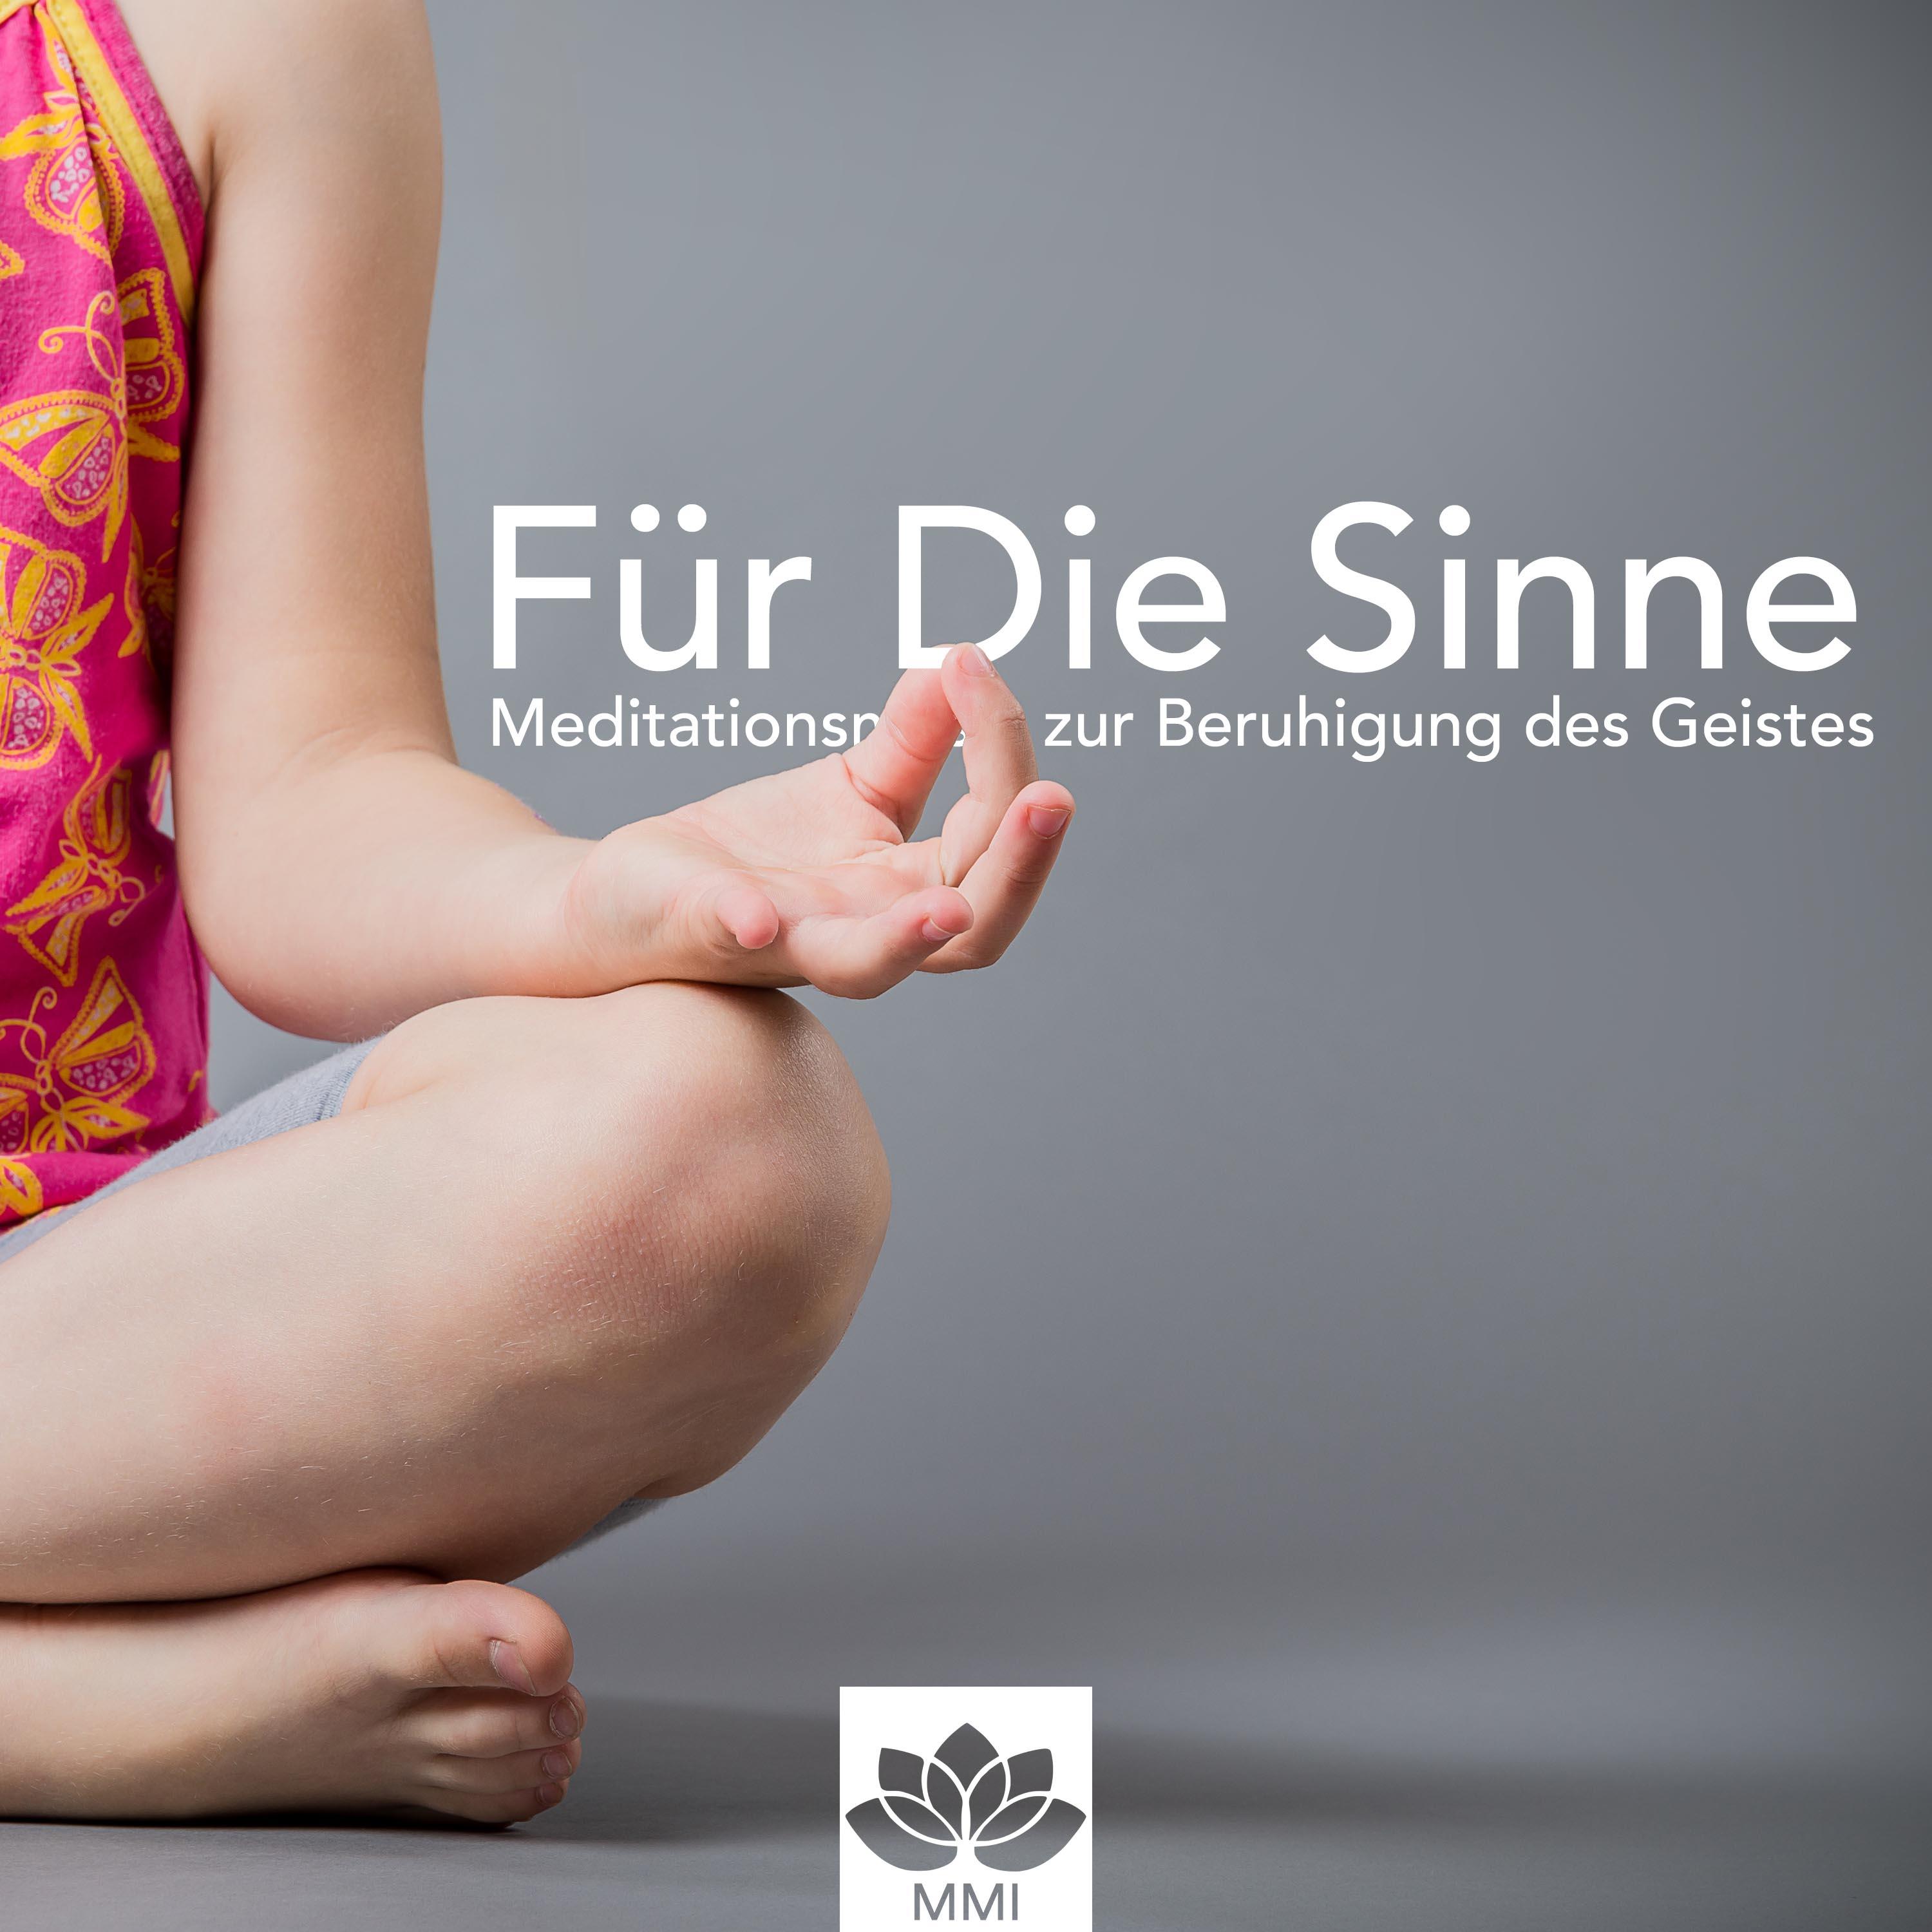 Für Die Sinne: Meditationsmusik zur Beruhigung des Geistes, Musik für Geführte Meditation